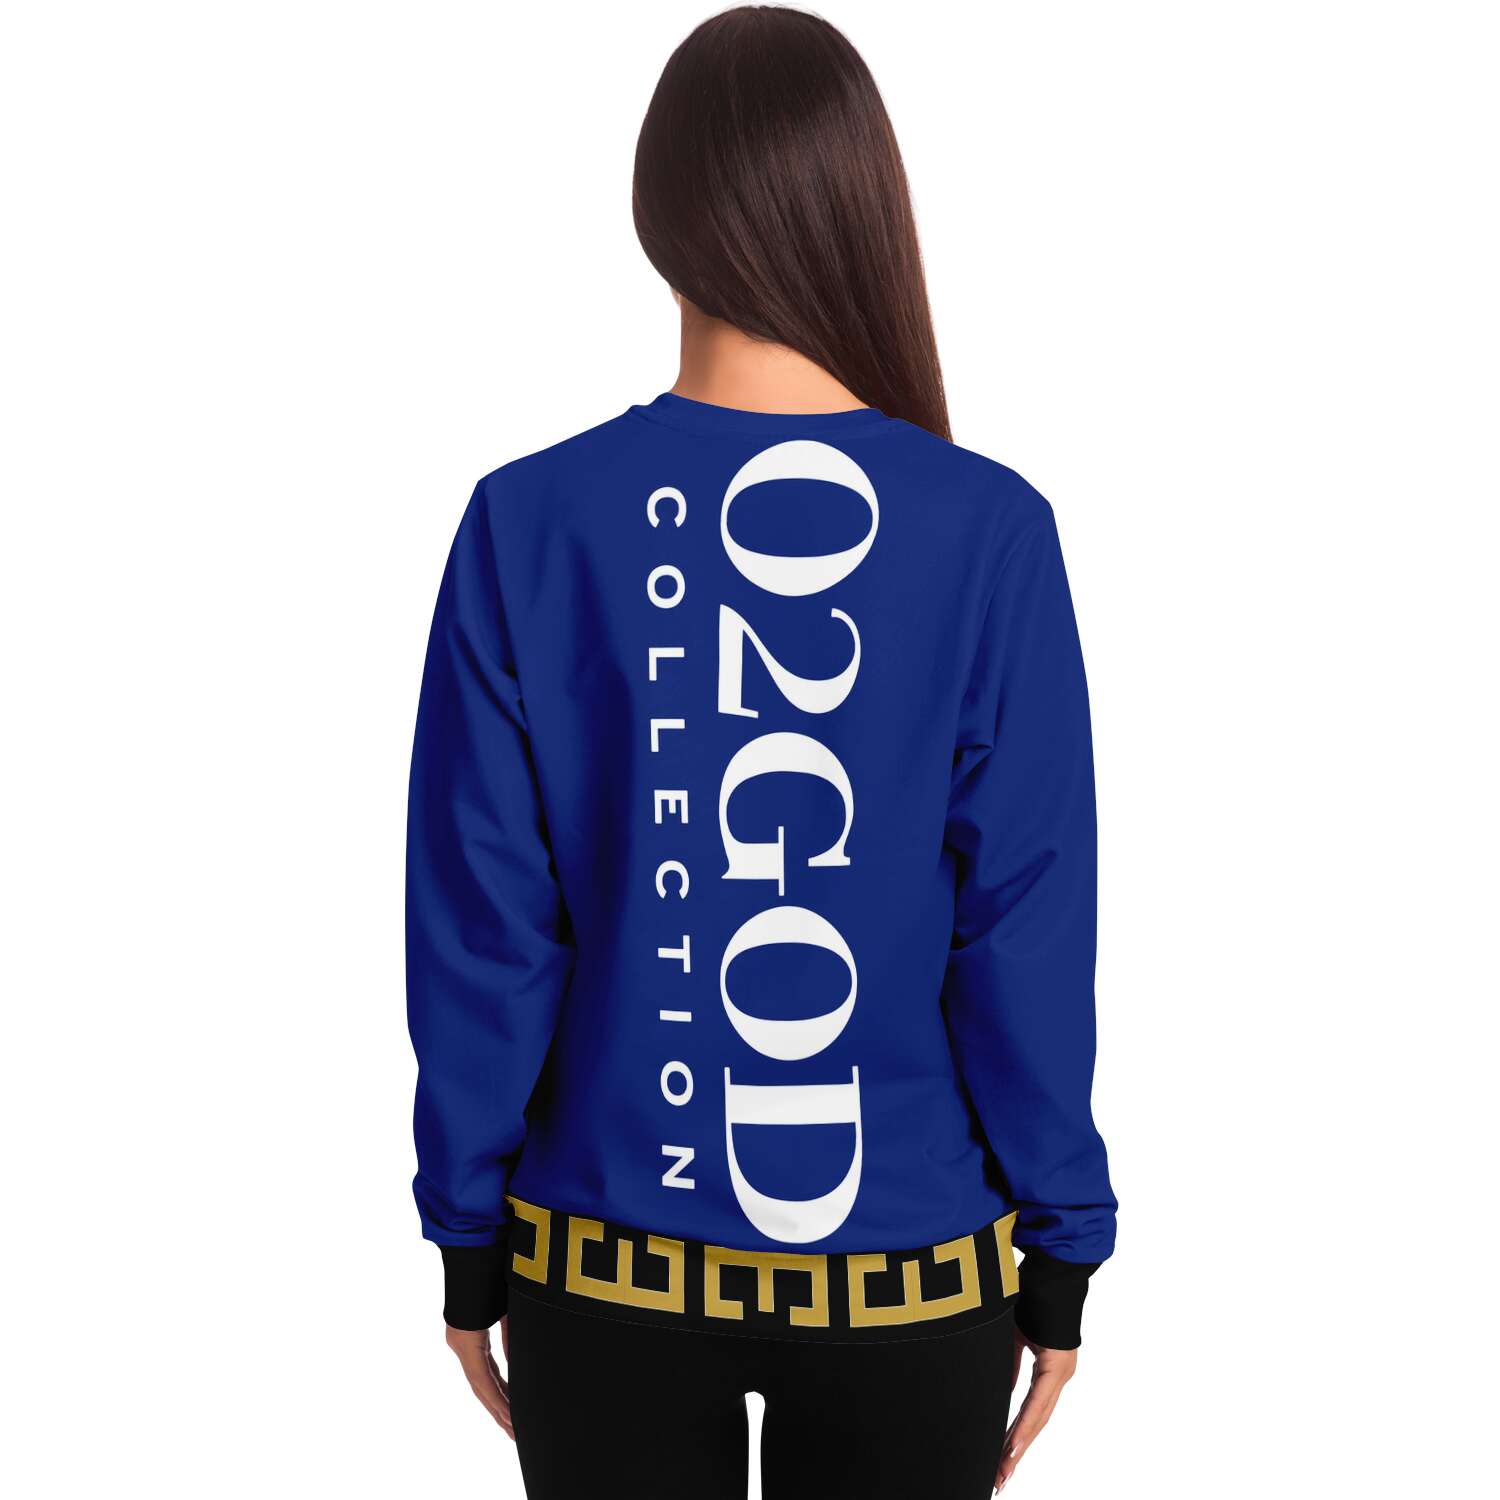 O2GOD Royal Fancy Crest Sweatshirt